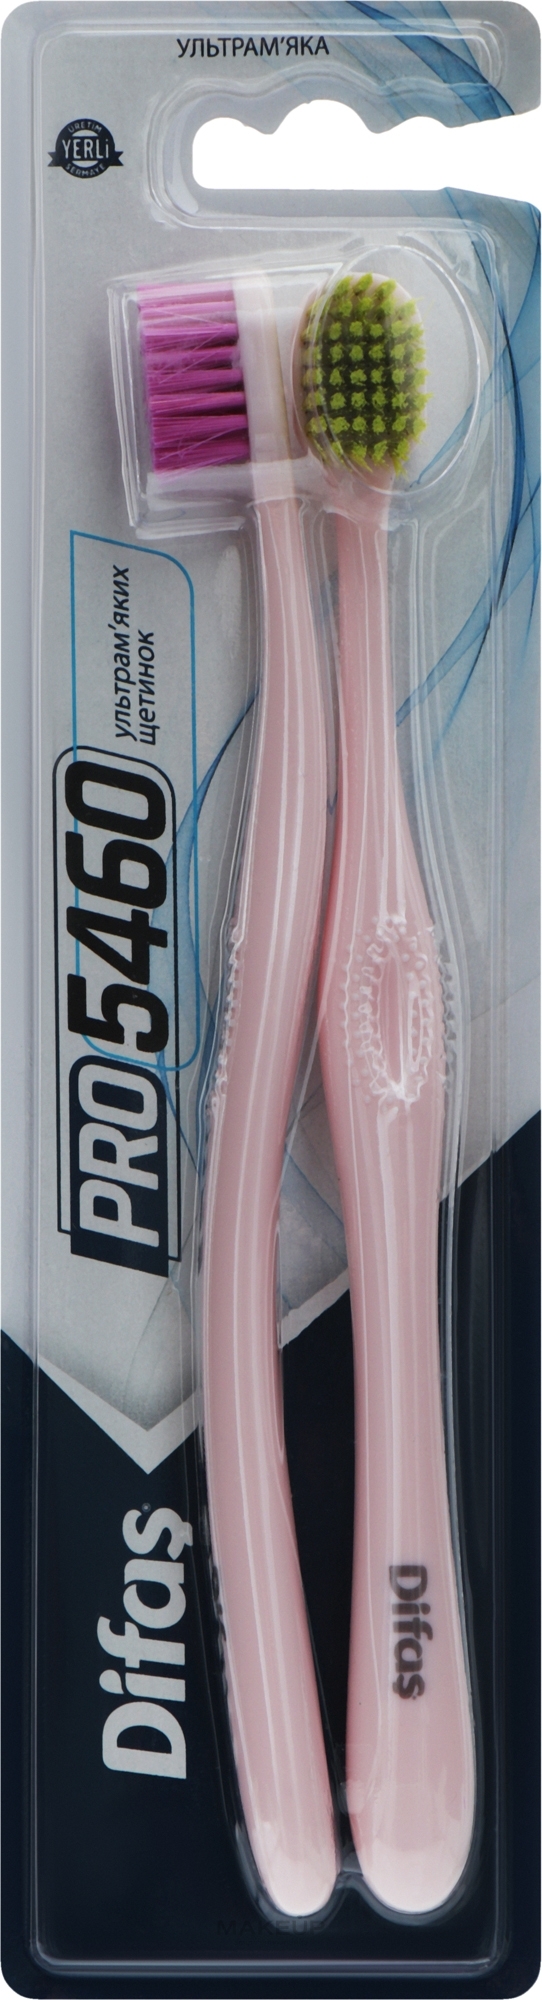 Набір зубних щіток "Ultra Soft", рожева + рожева - Difas PRO 5460 — фото 2шт